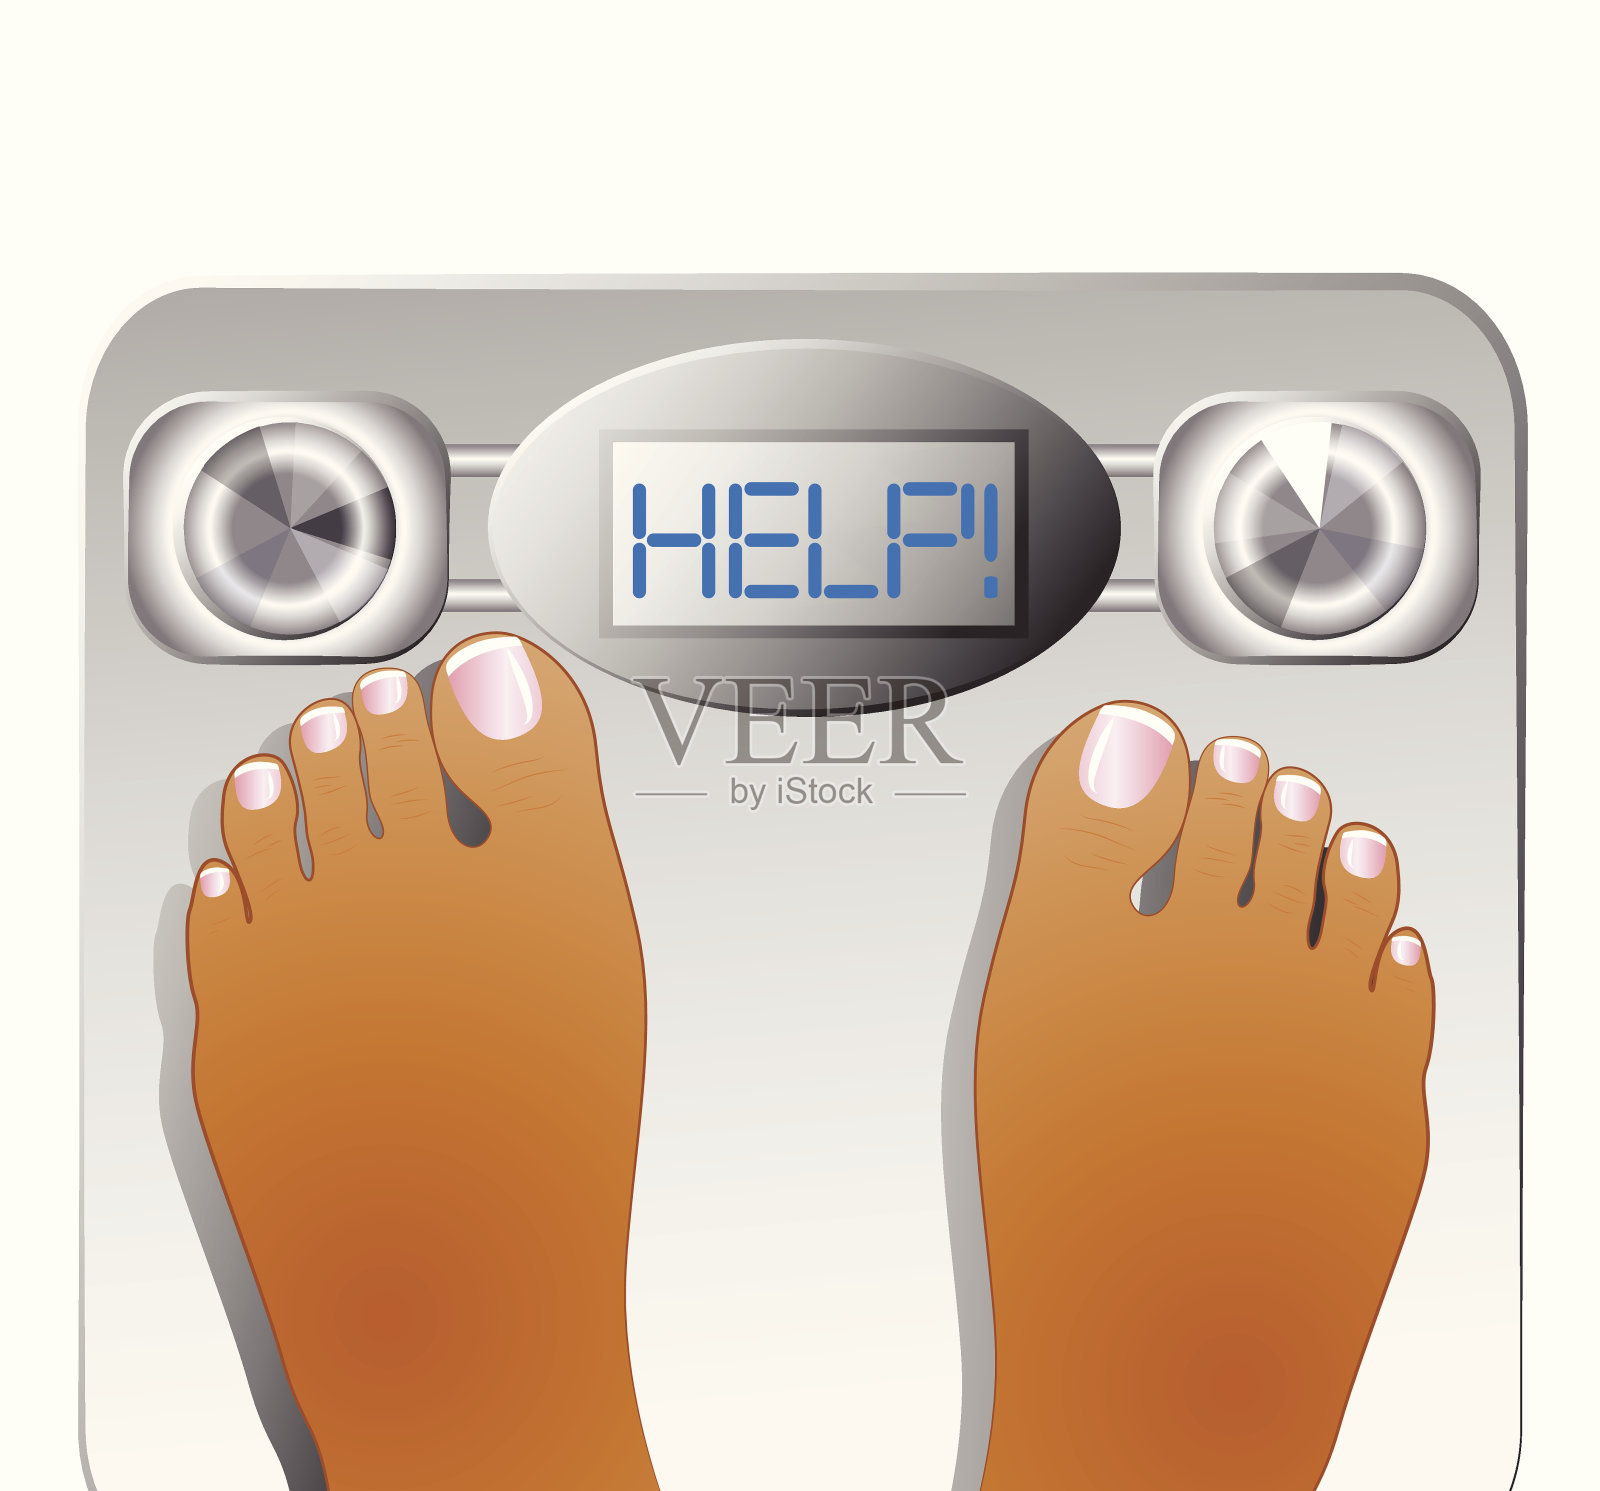 夜光型健康秤测脂肪称体重秤BIA人体秤玻璃电子秤共享-阿里巴巴